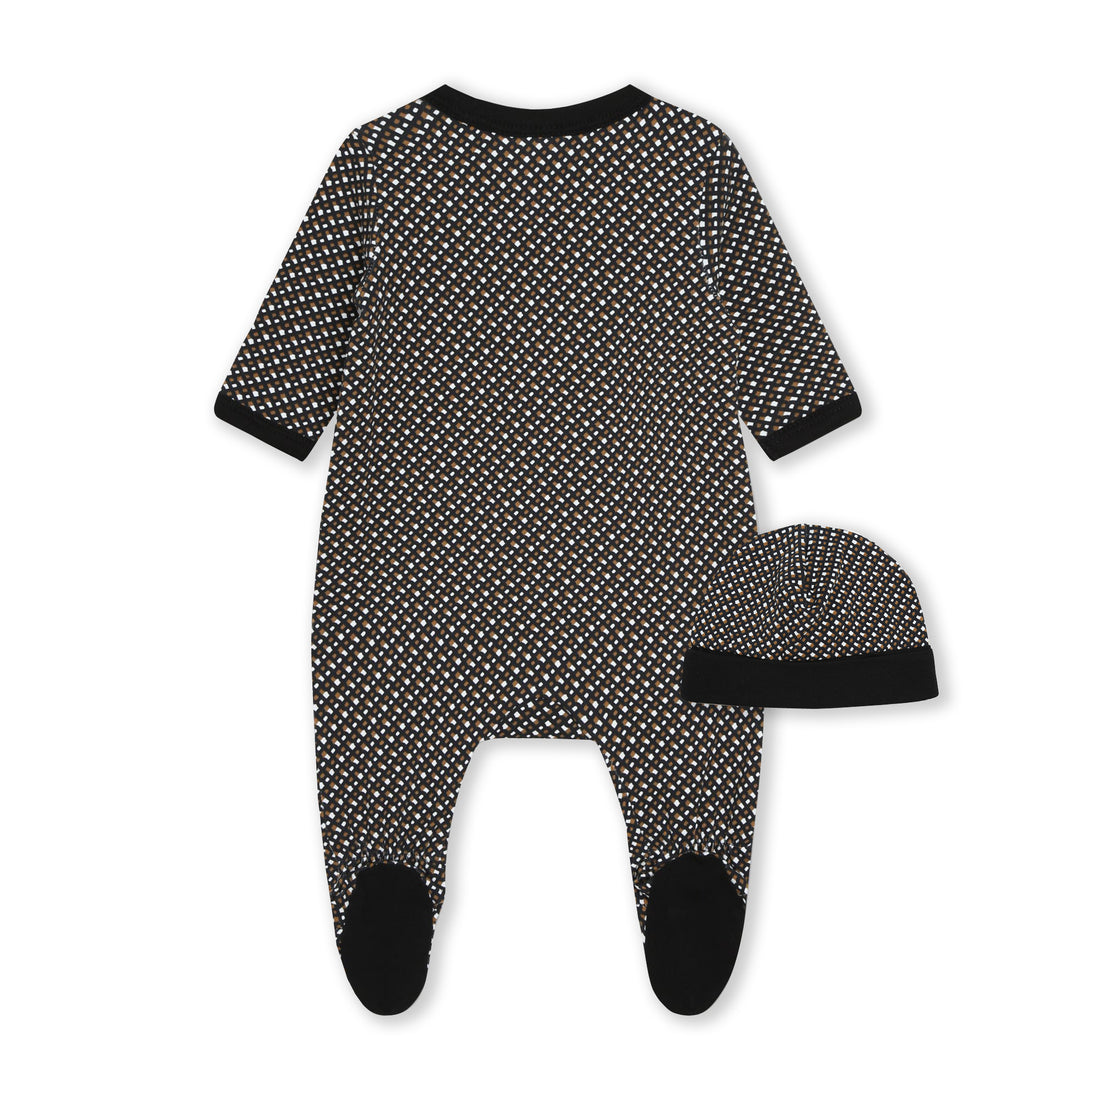 Hugo Boss Pyjamas + Pull On Hat Set Style: J98438